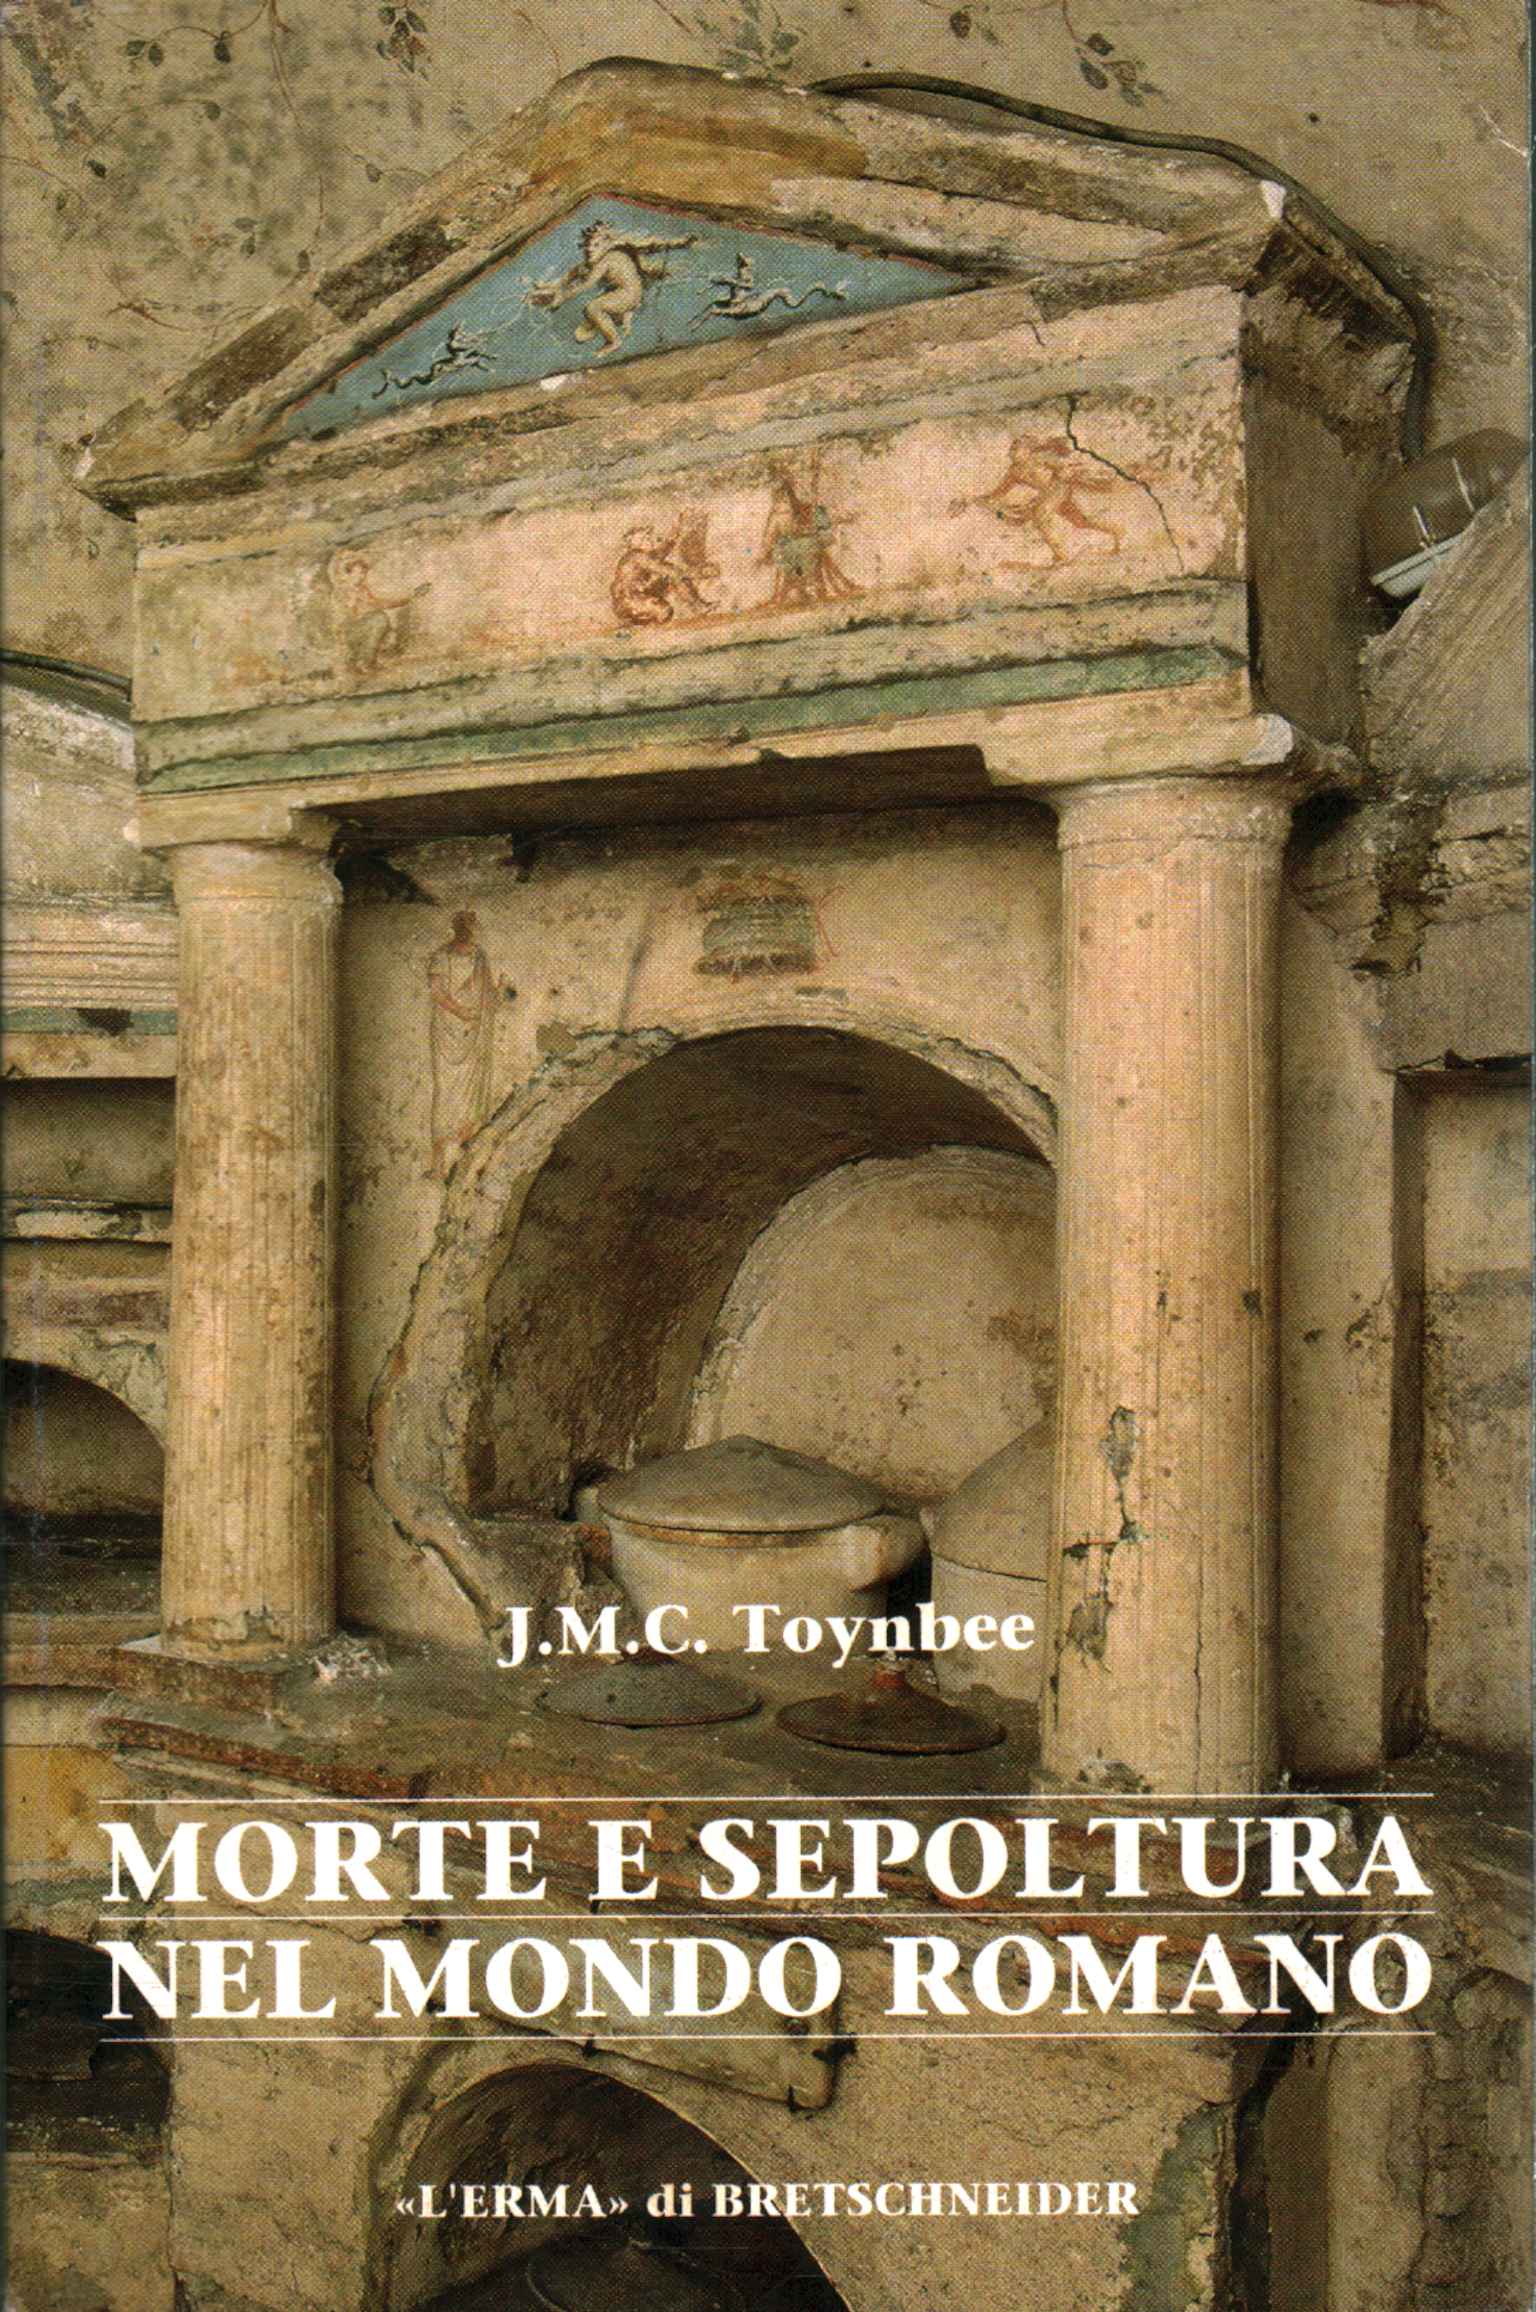 Tod und Bestattung in der römischen Welt